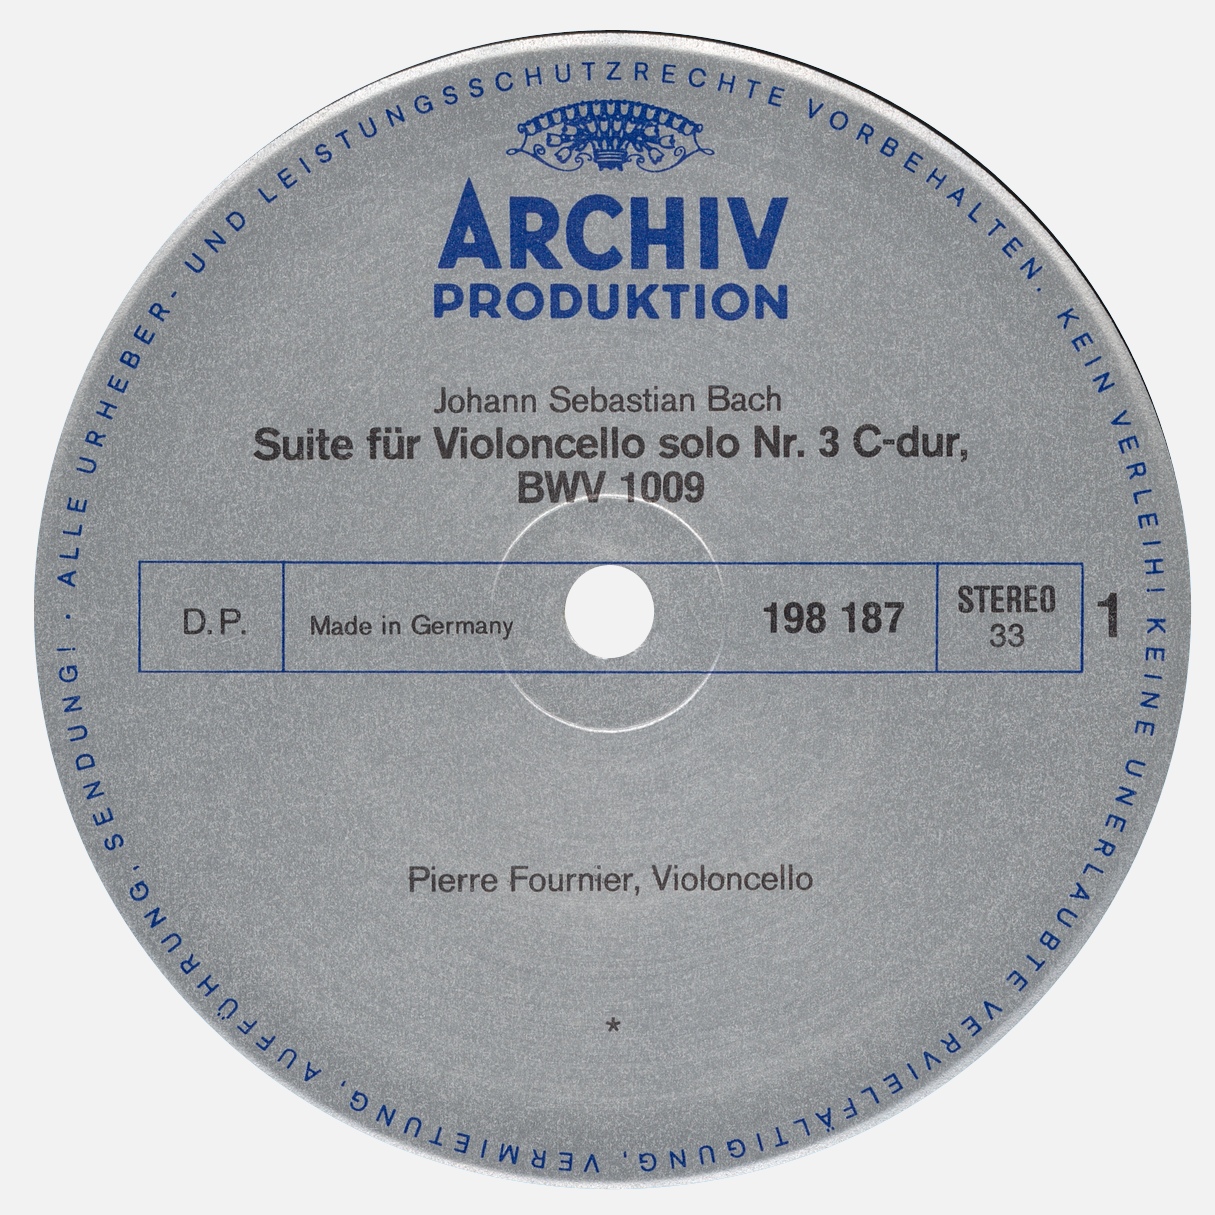 Étiquette recto du disque Archiv Produktion SAPM 198 187